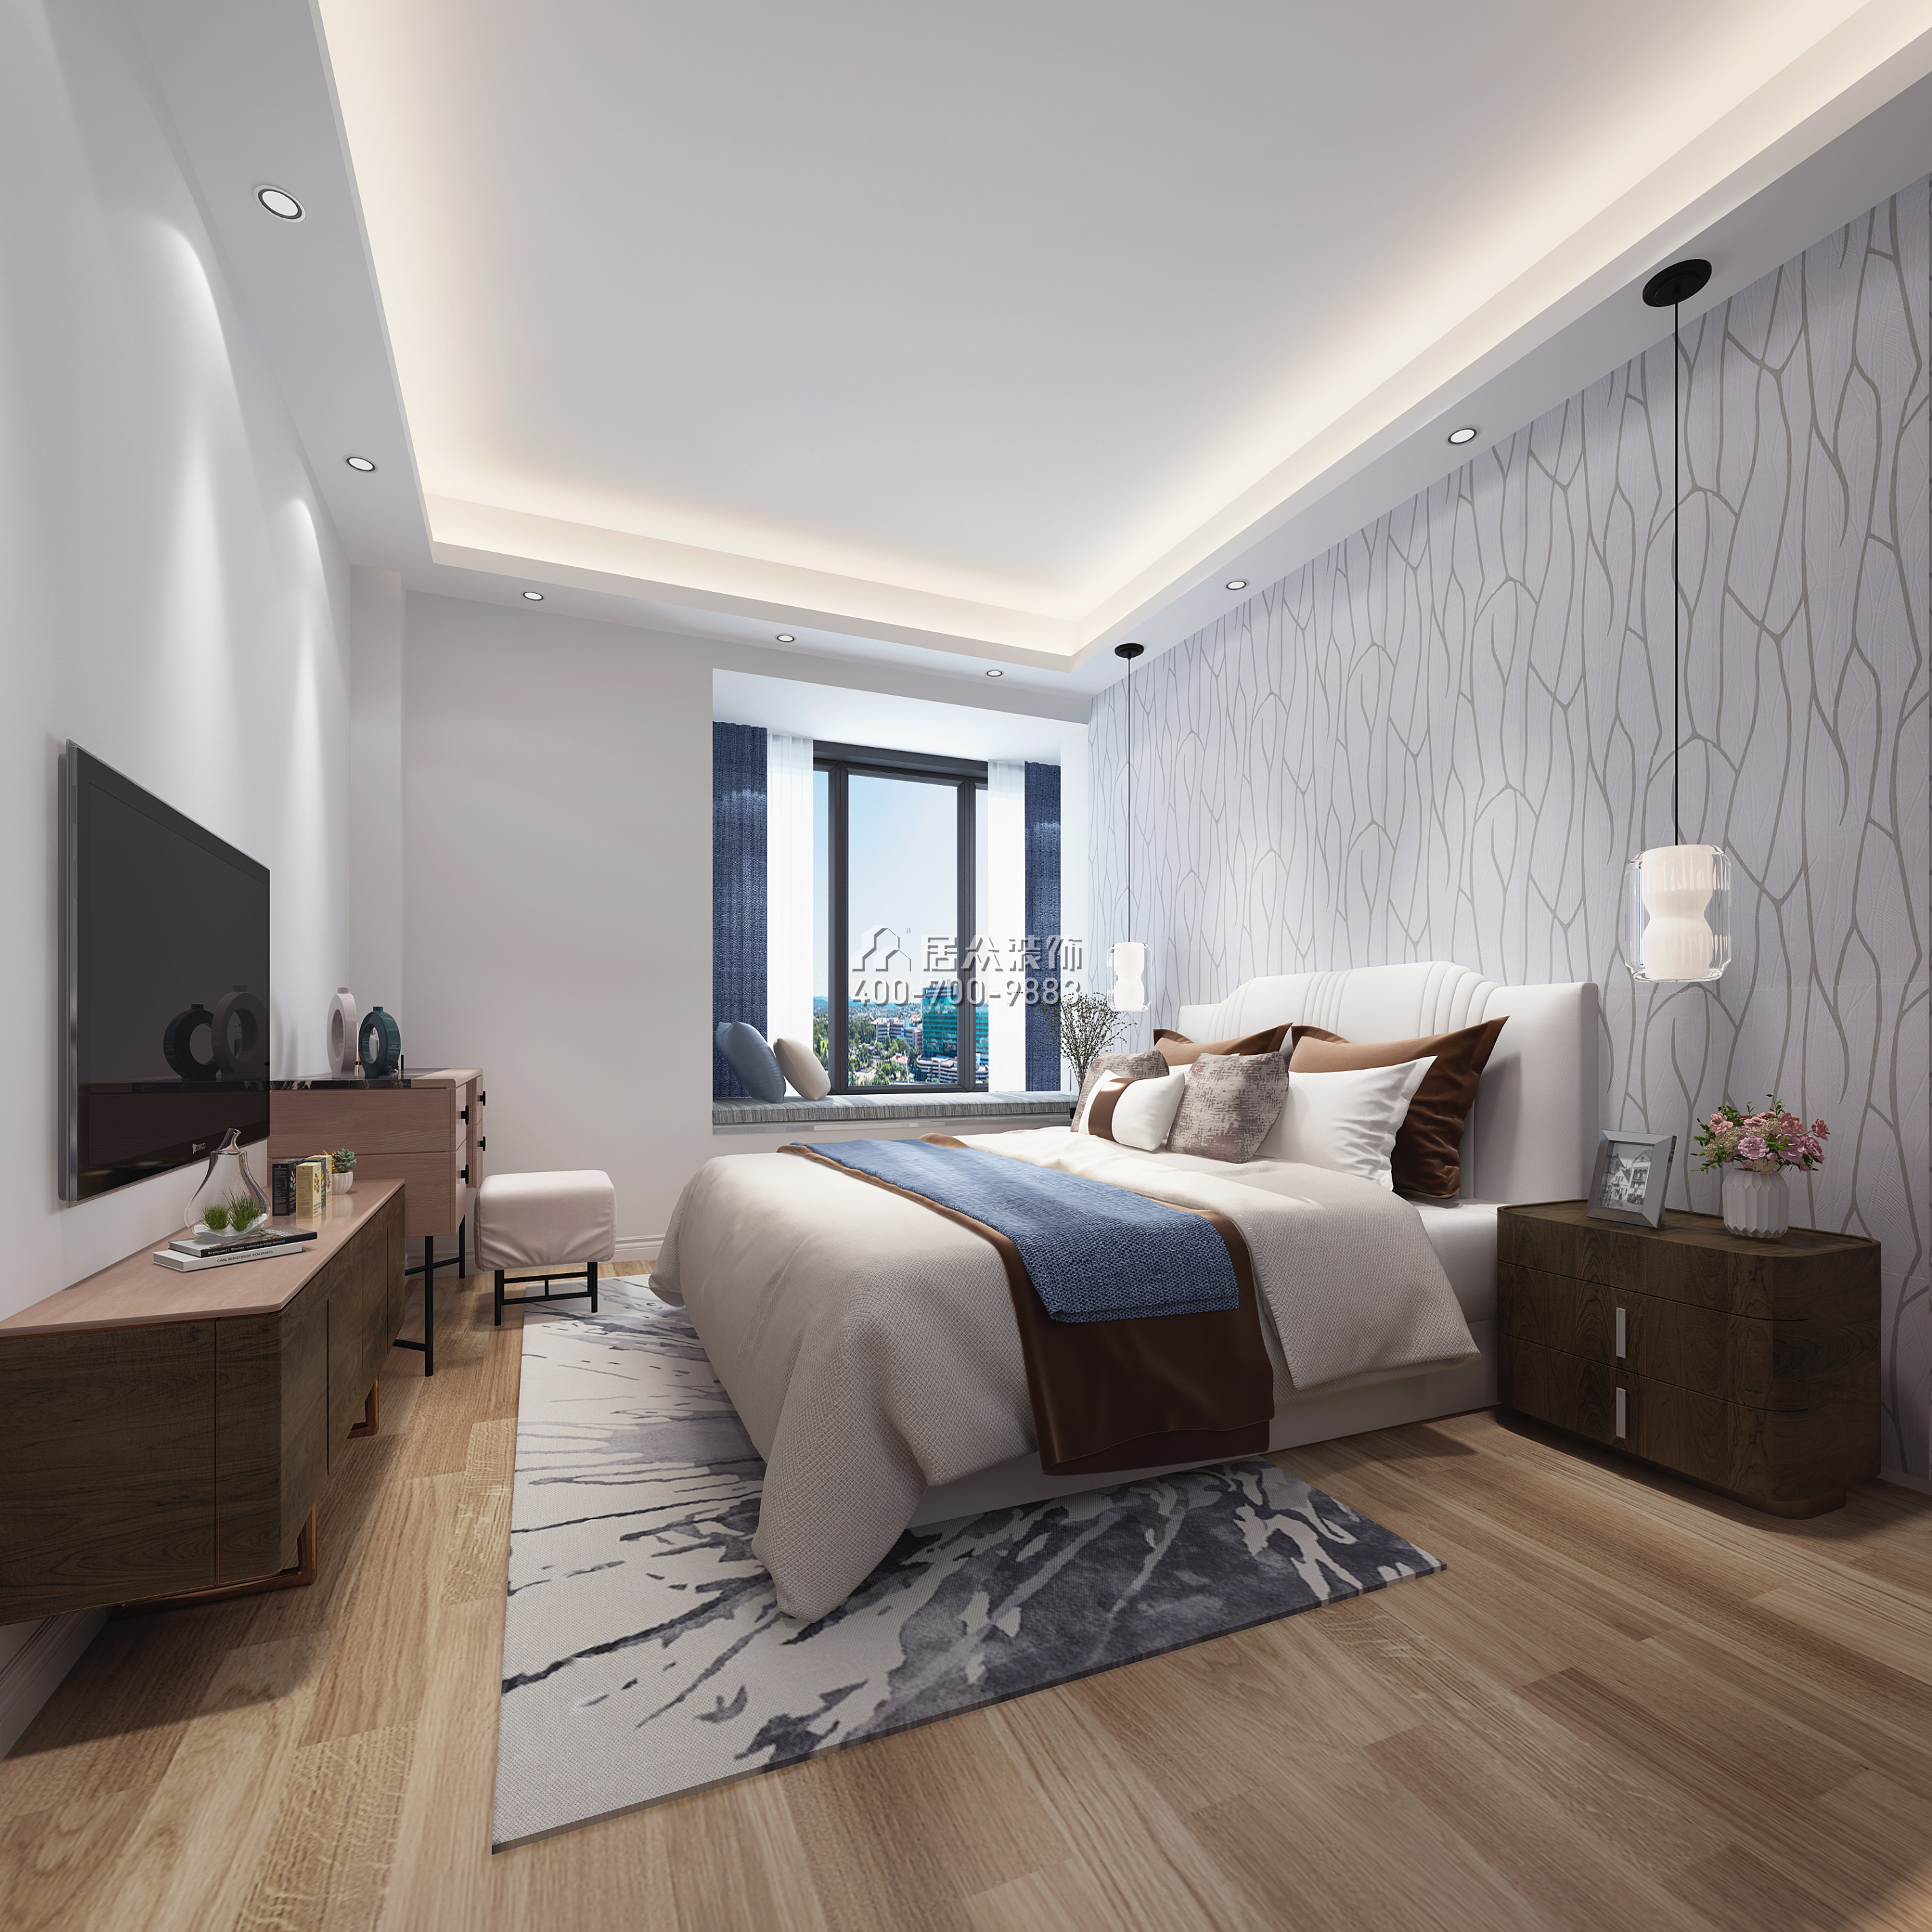 中駿藍灣悅庭110平方米現代簡約風格平層戶型臥室裝修效果圖